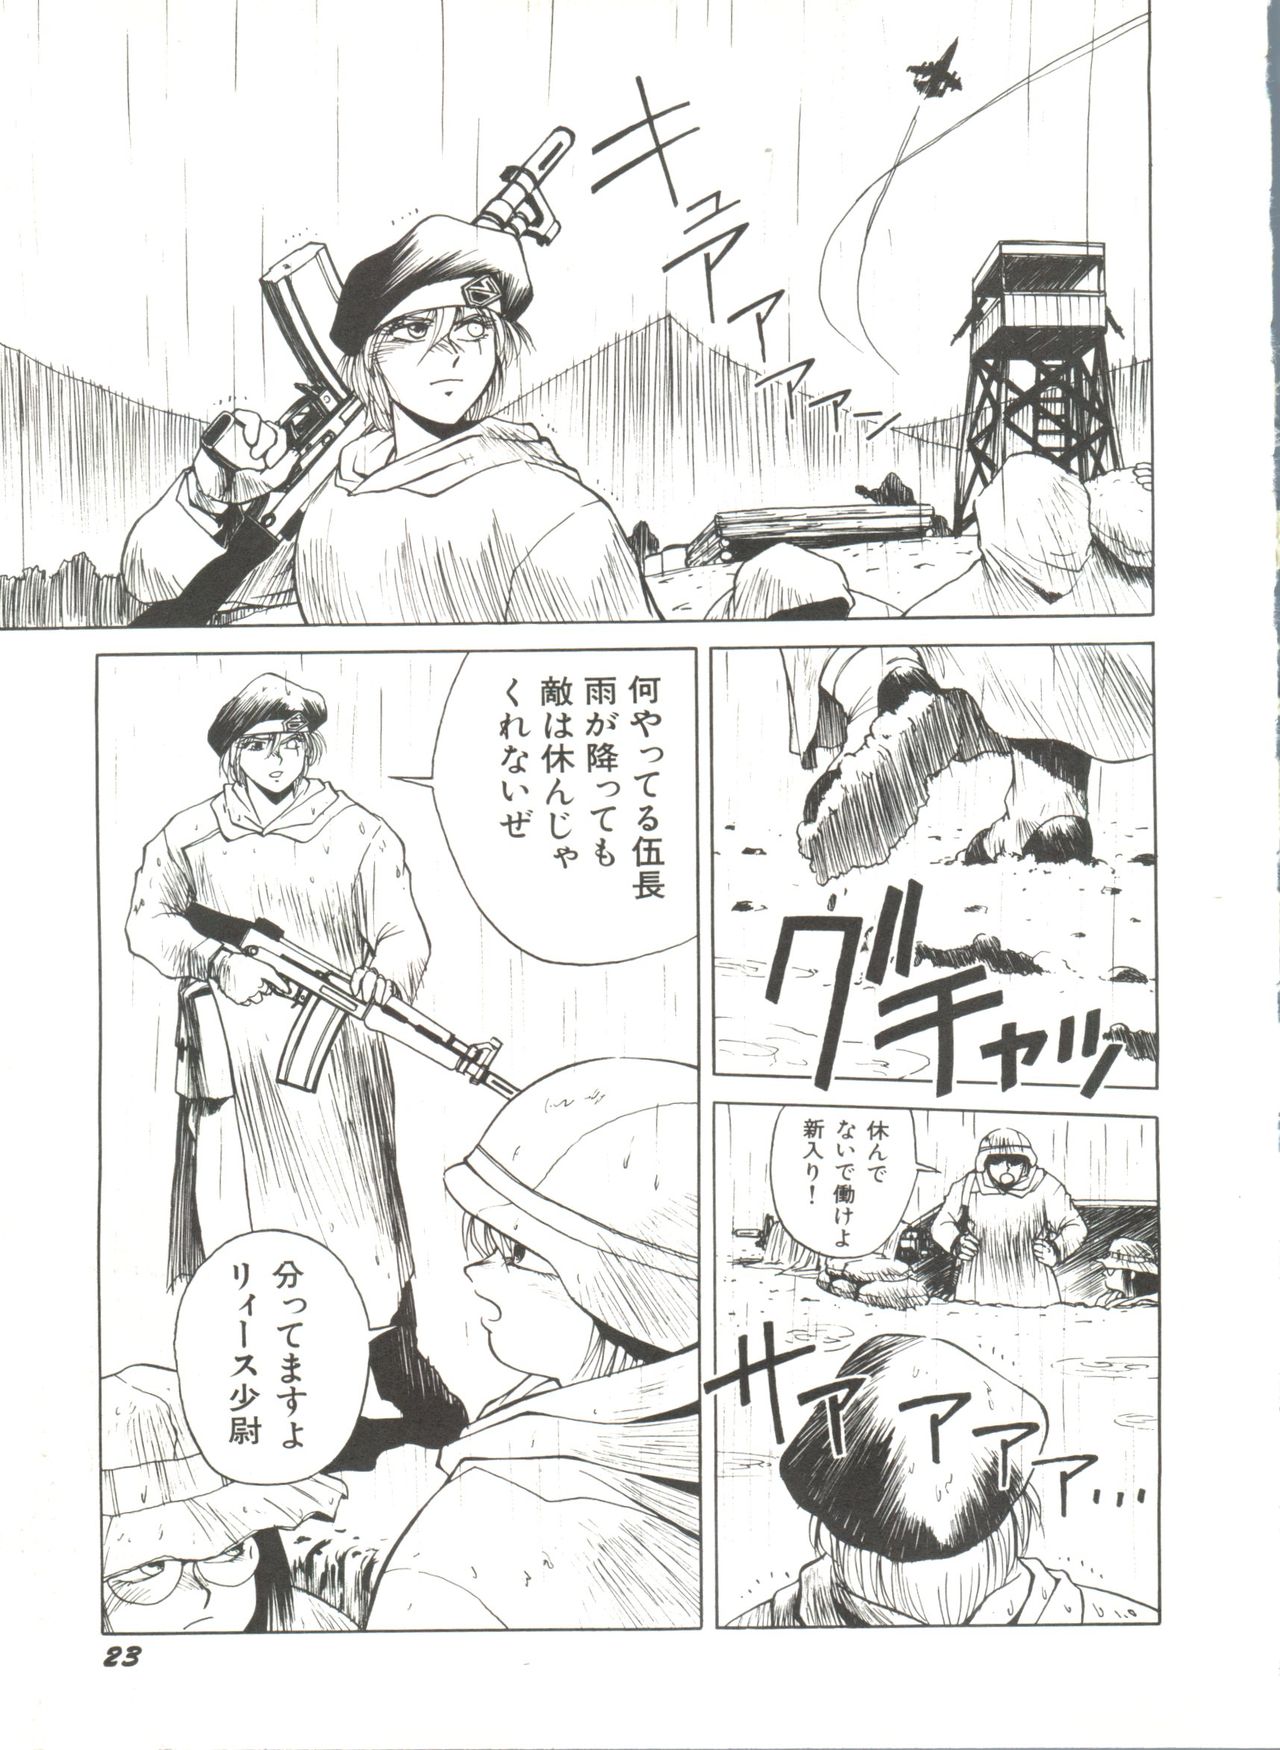 [Anthology] Bishoujo Doujinshi Anthology 4 (Various) page 27 full